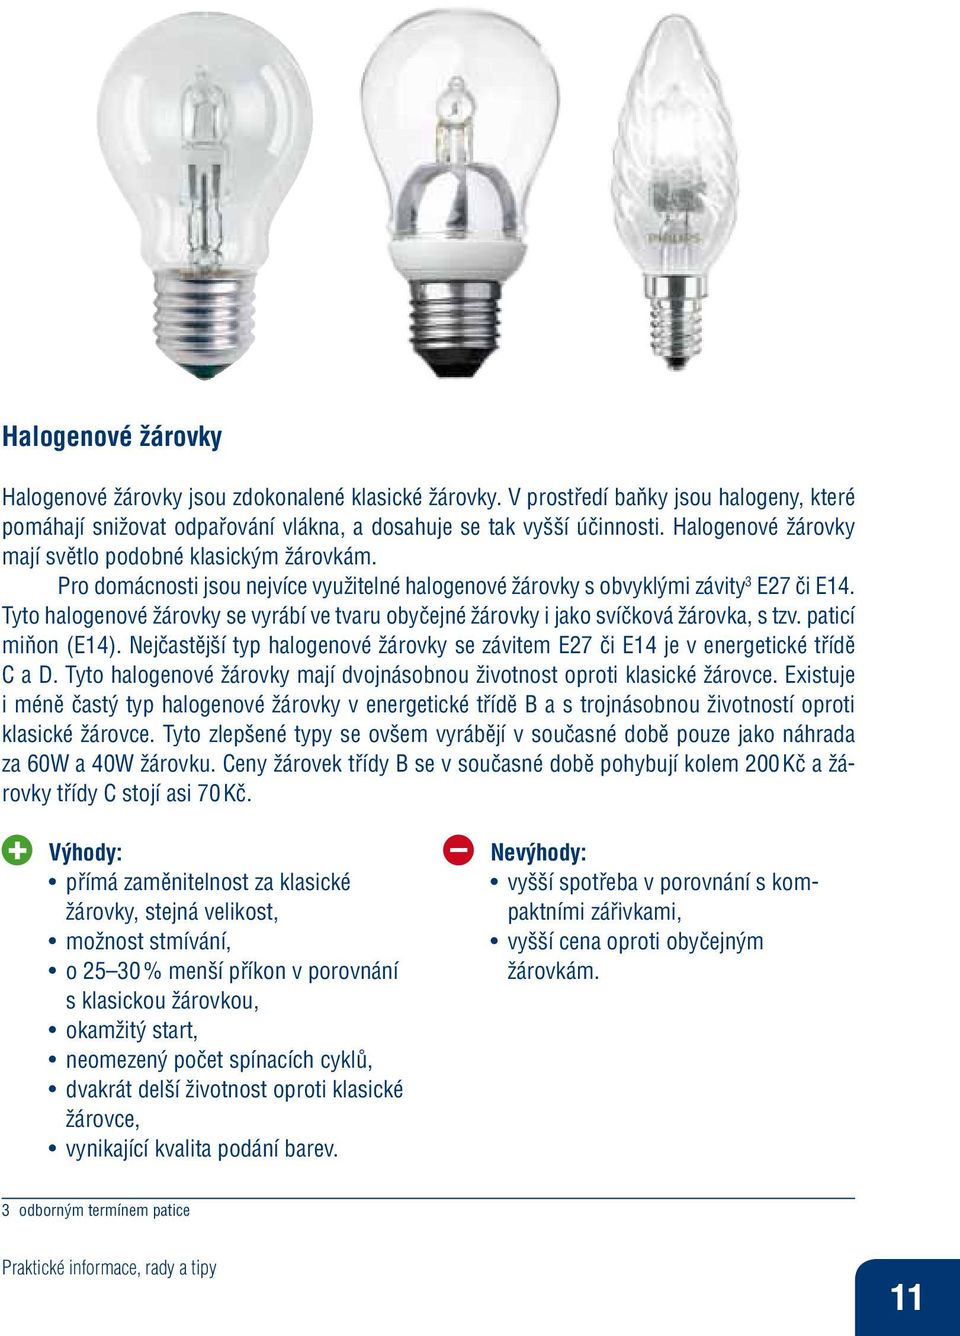 Tyto halogenové žárovky se vyrábí ve tvaru obyčejné žárovky i jako svíčková žárovka, s tzv. paticí miňon (E14). Nejčastější typ halogenové žárovky se závitem E27 či E14 je v energetické třídě C a D.